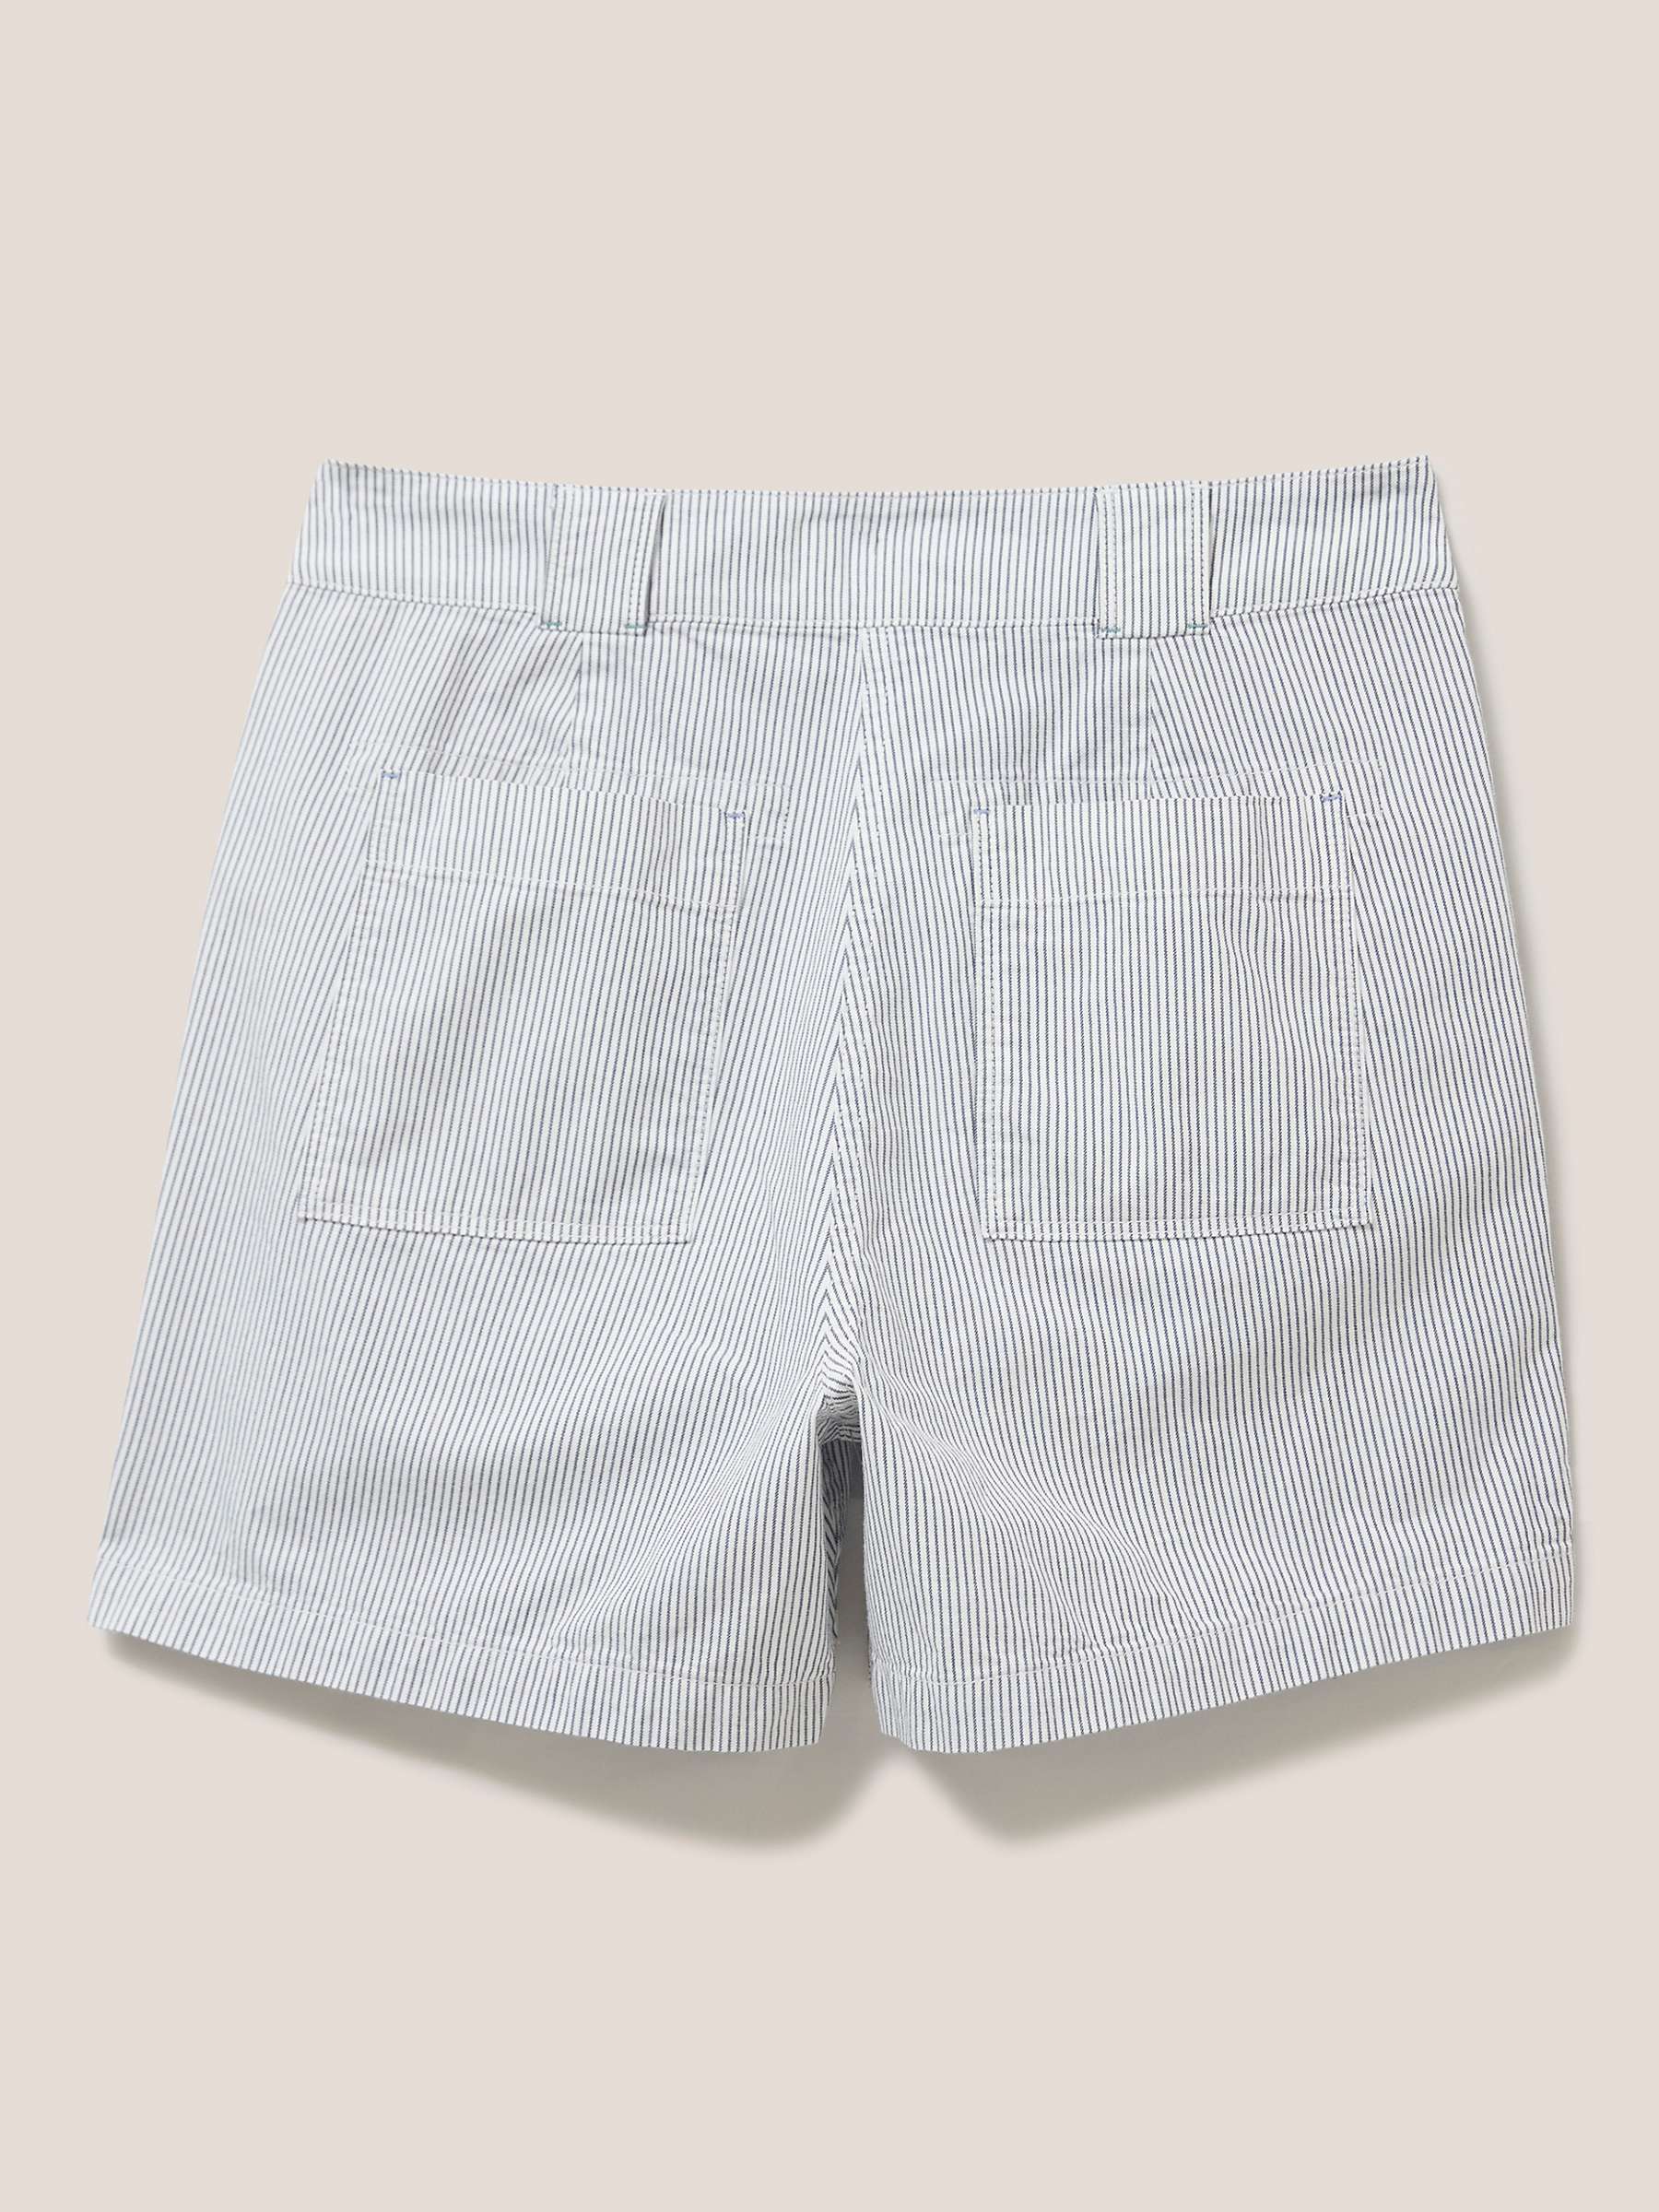 Buy White Stuff Tessa Chino Shorts Online at johnlewis.com